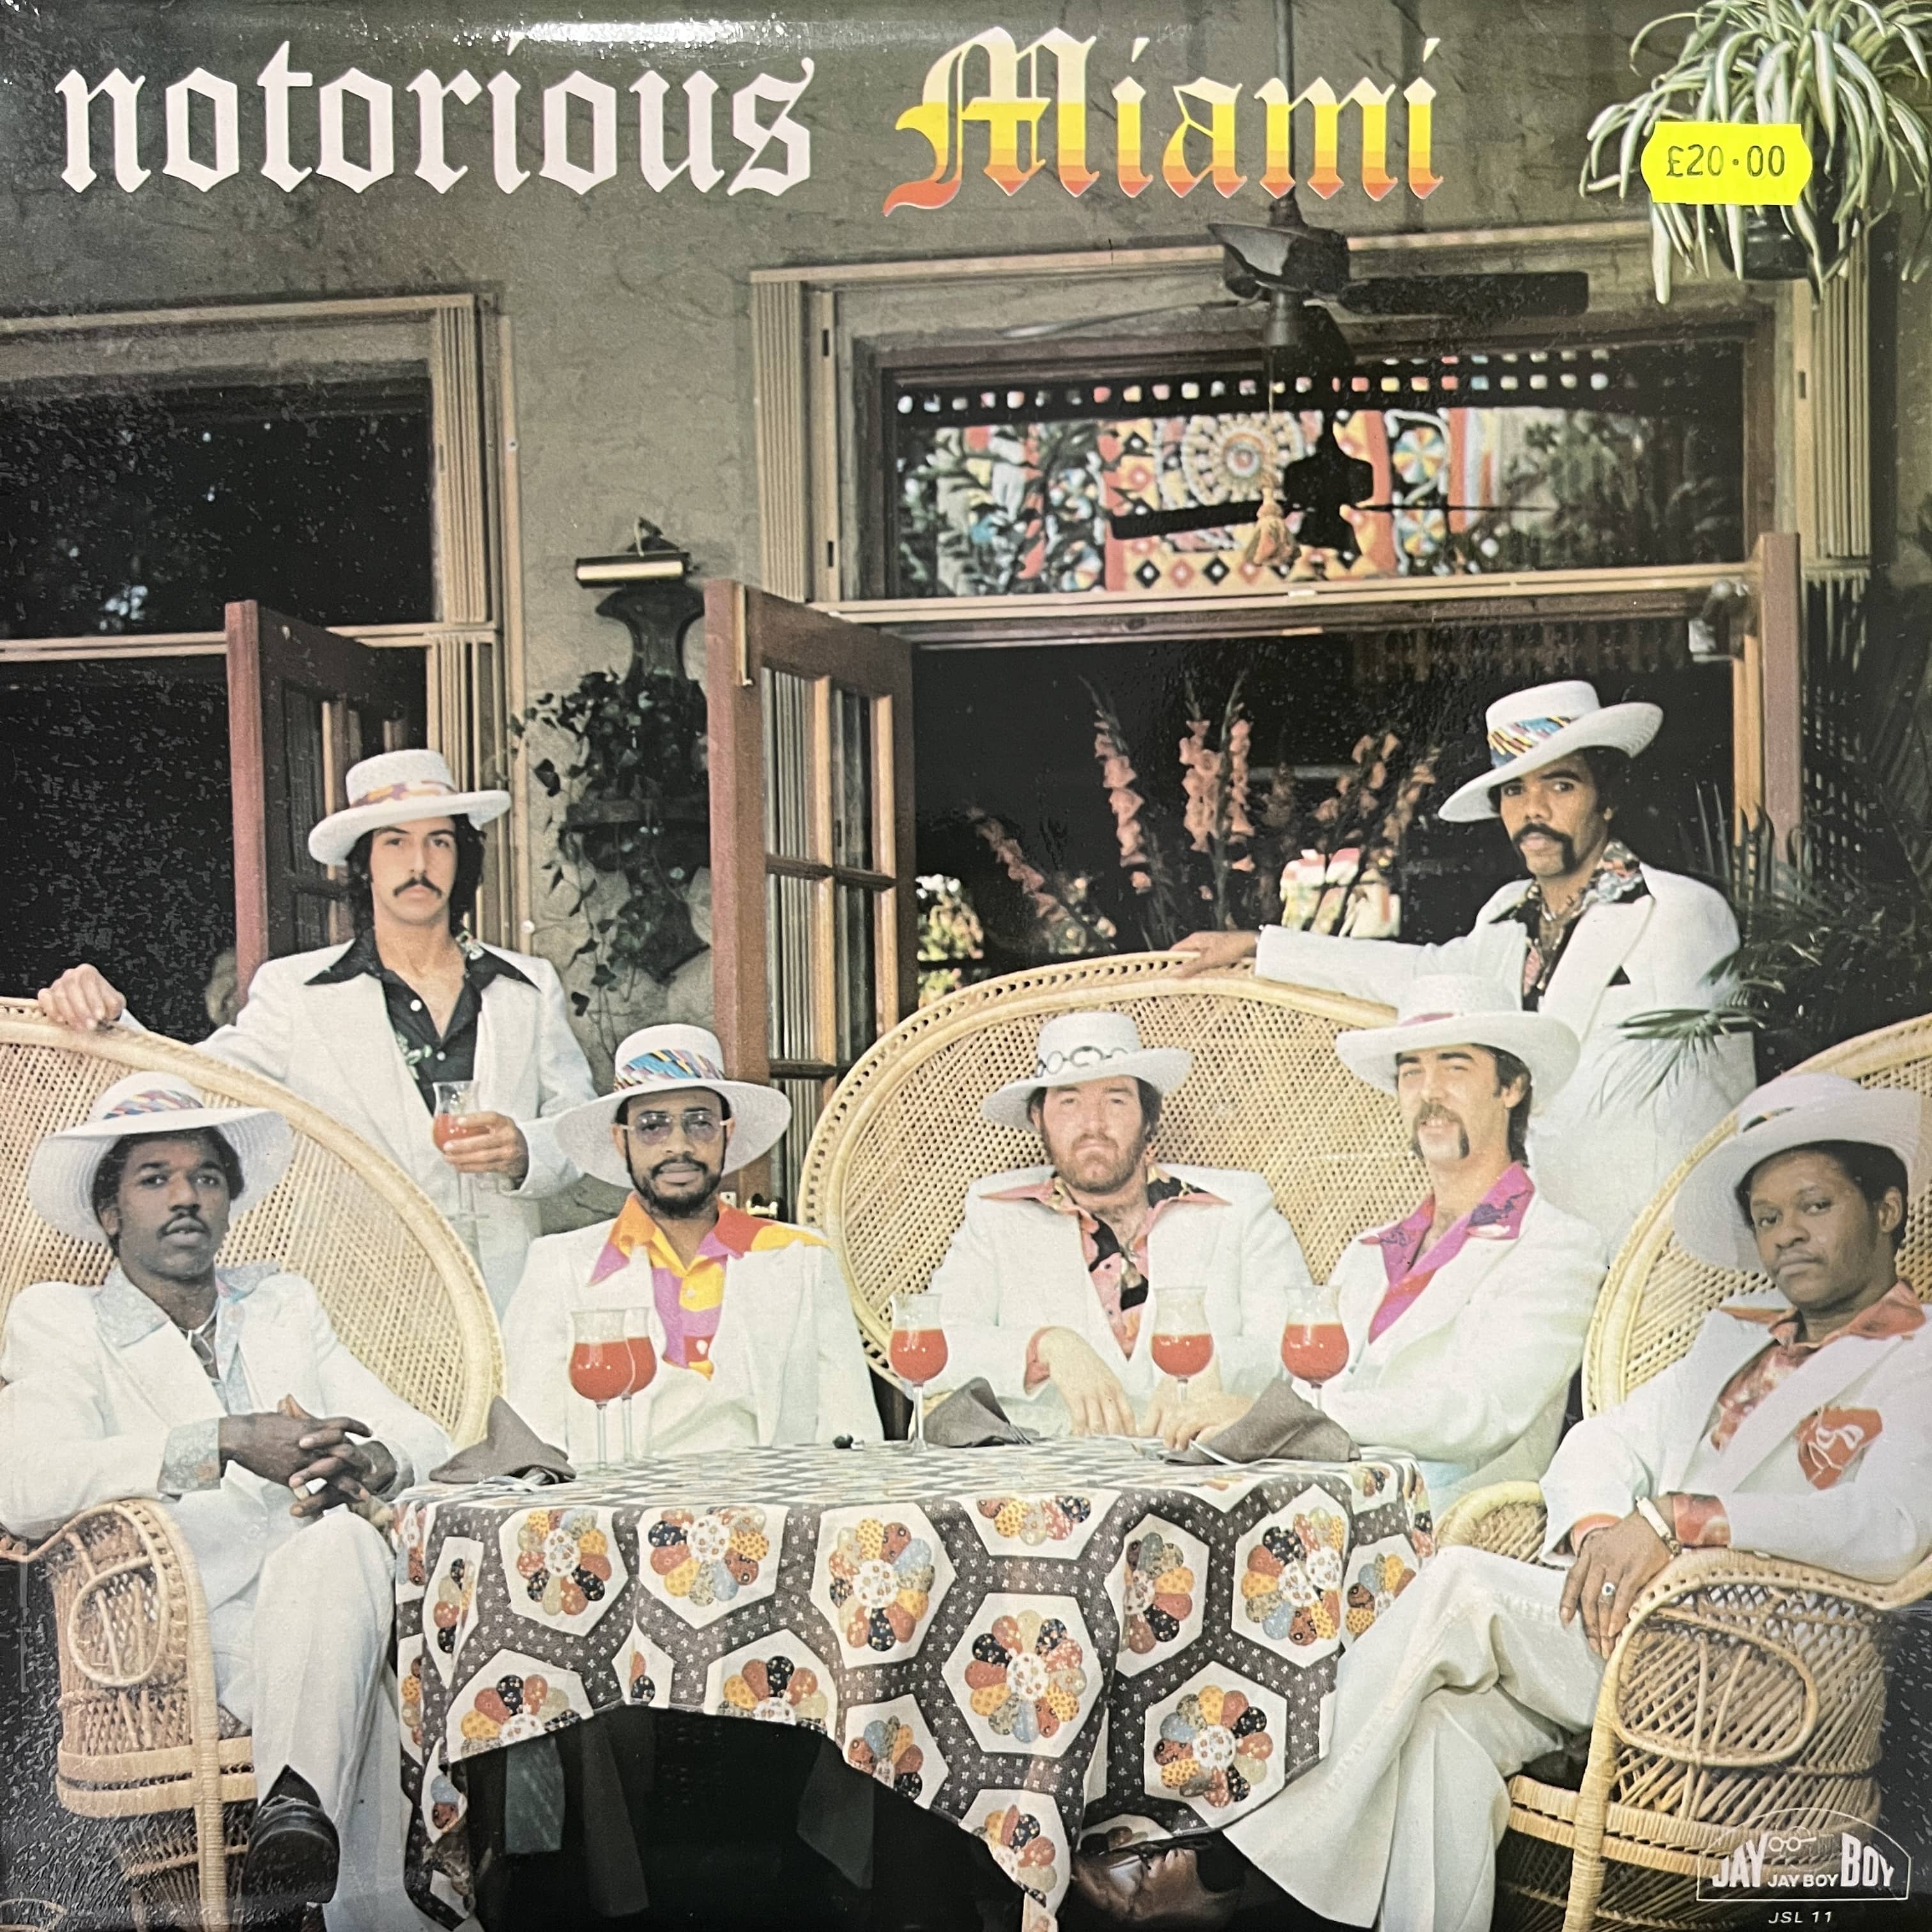 Notorious Miami